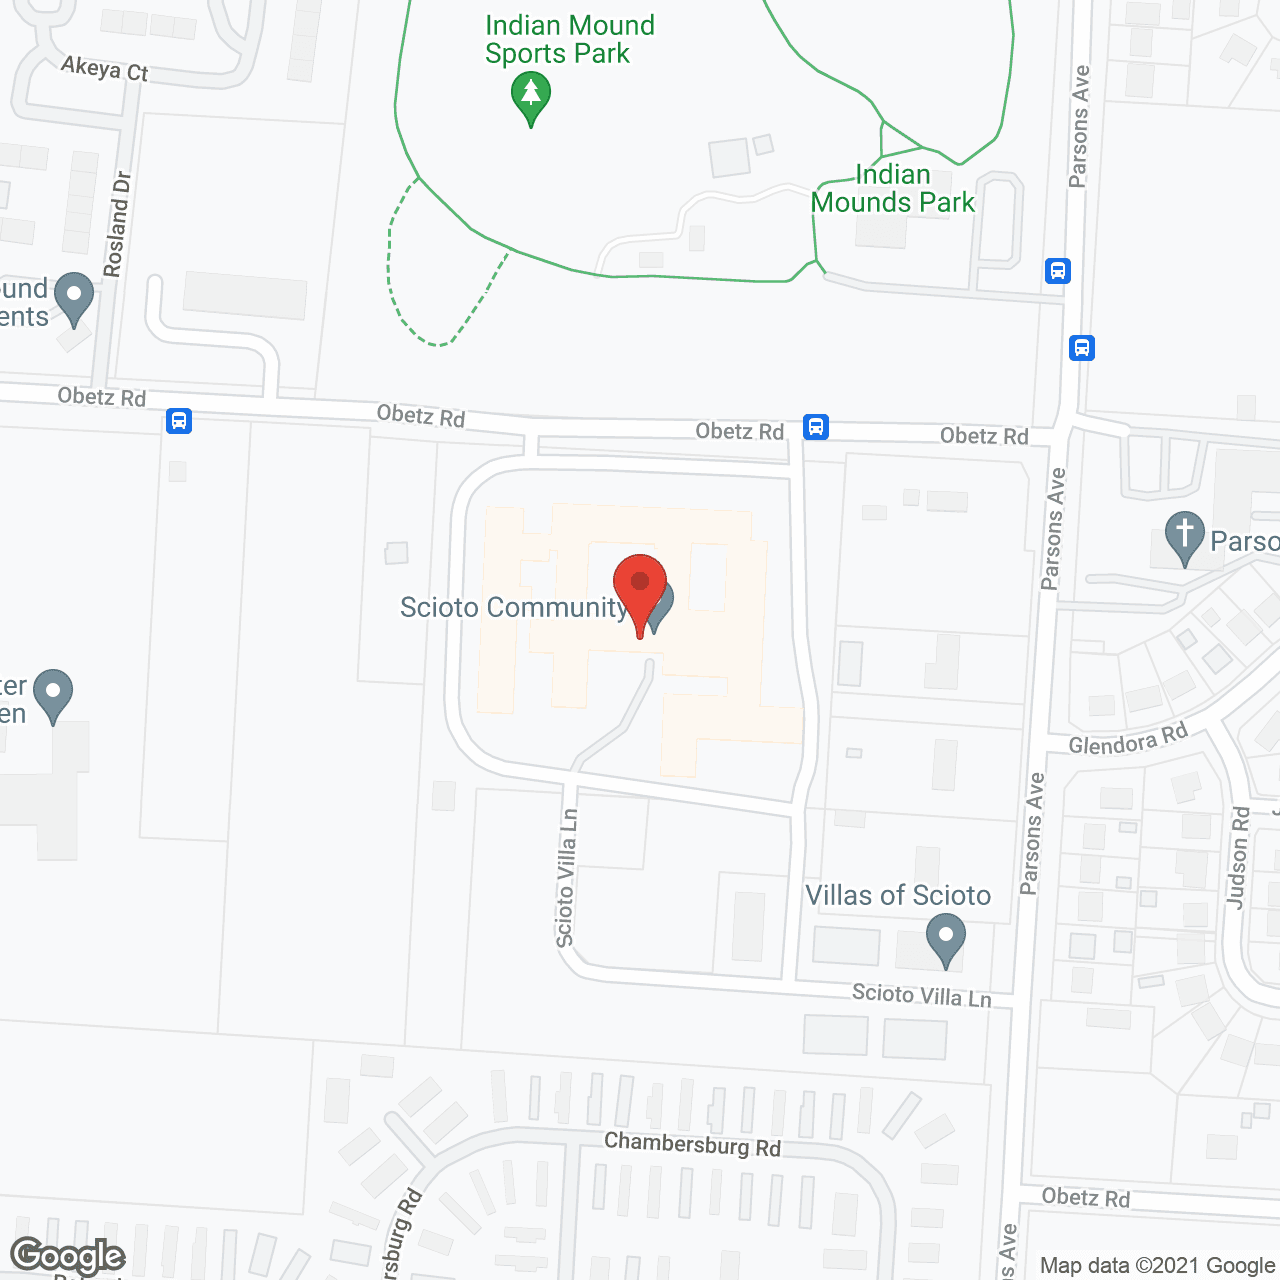 Villas of Scioto in google map